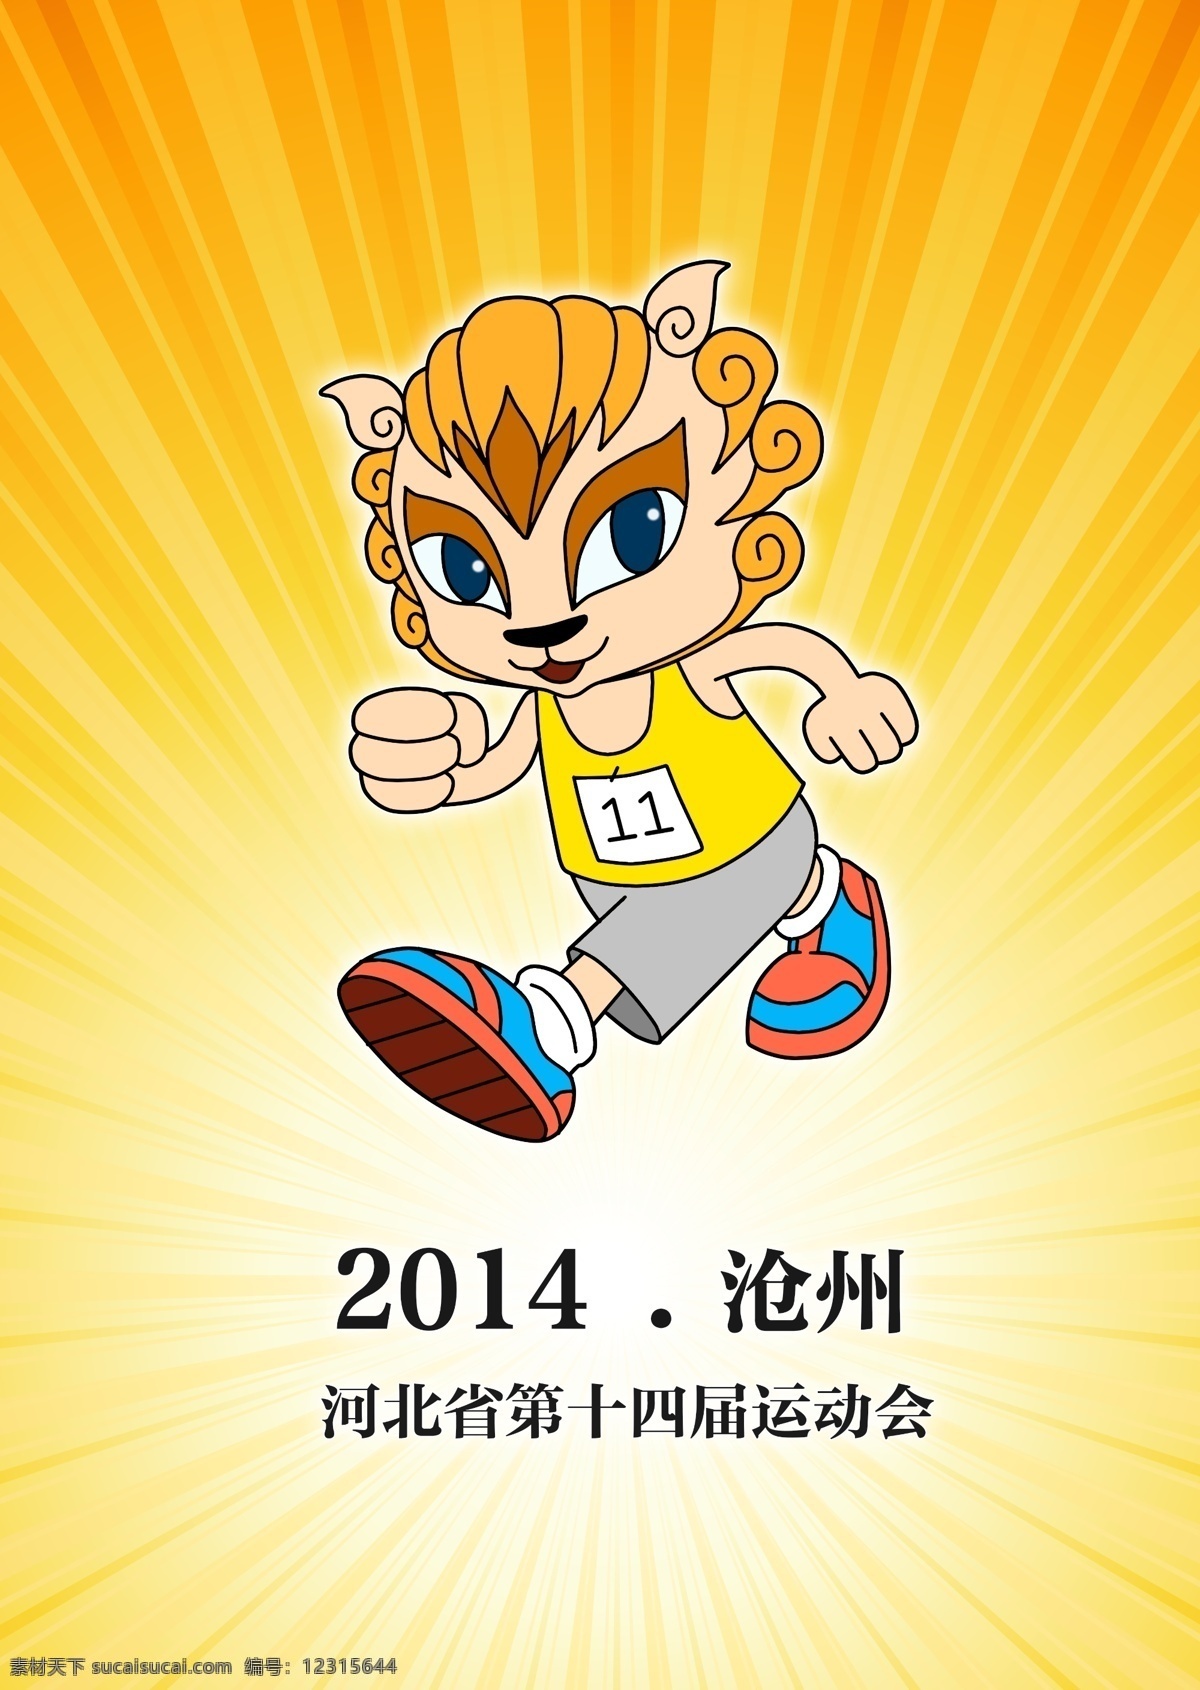 河北 省运会 吉祥物 活泼 年轻 跑步 狮子 运动会 运动员 原创设计 原创海报